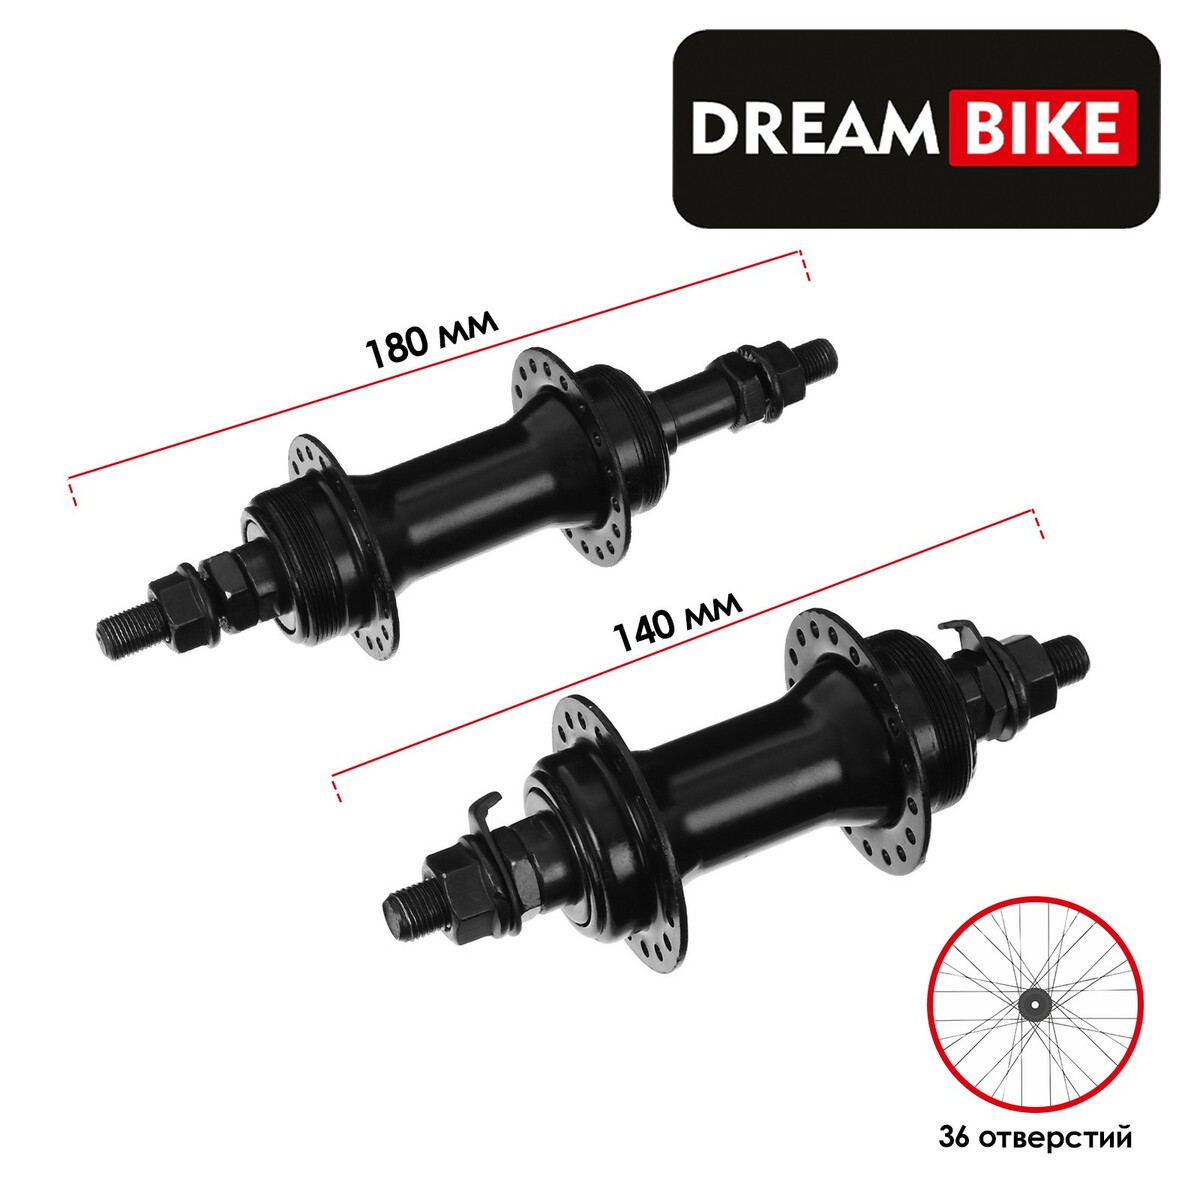   dream bike, 36 ,   6-7 ,  